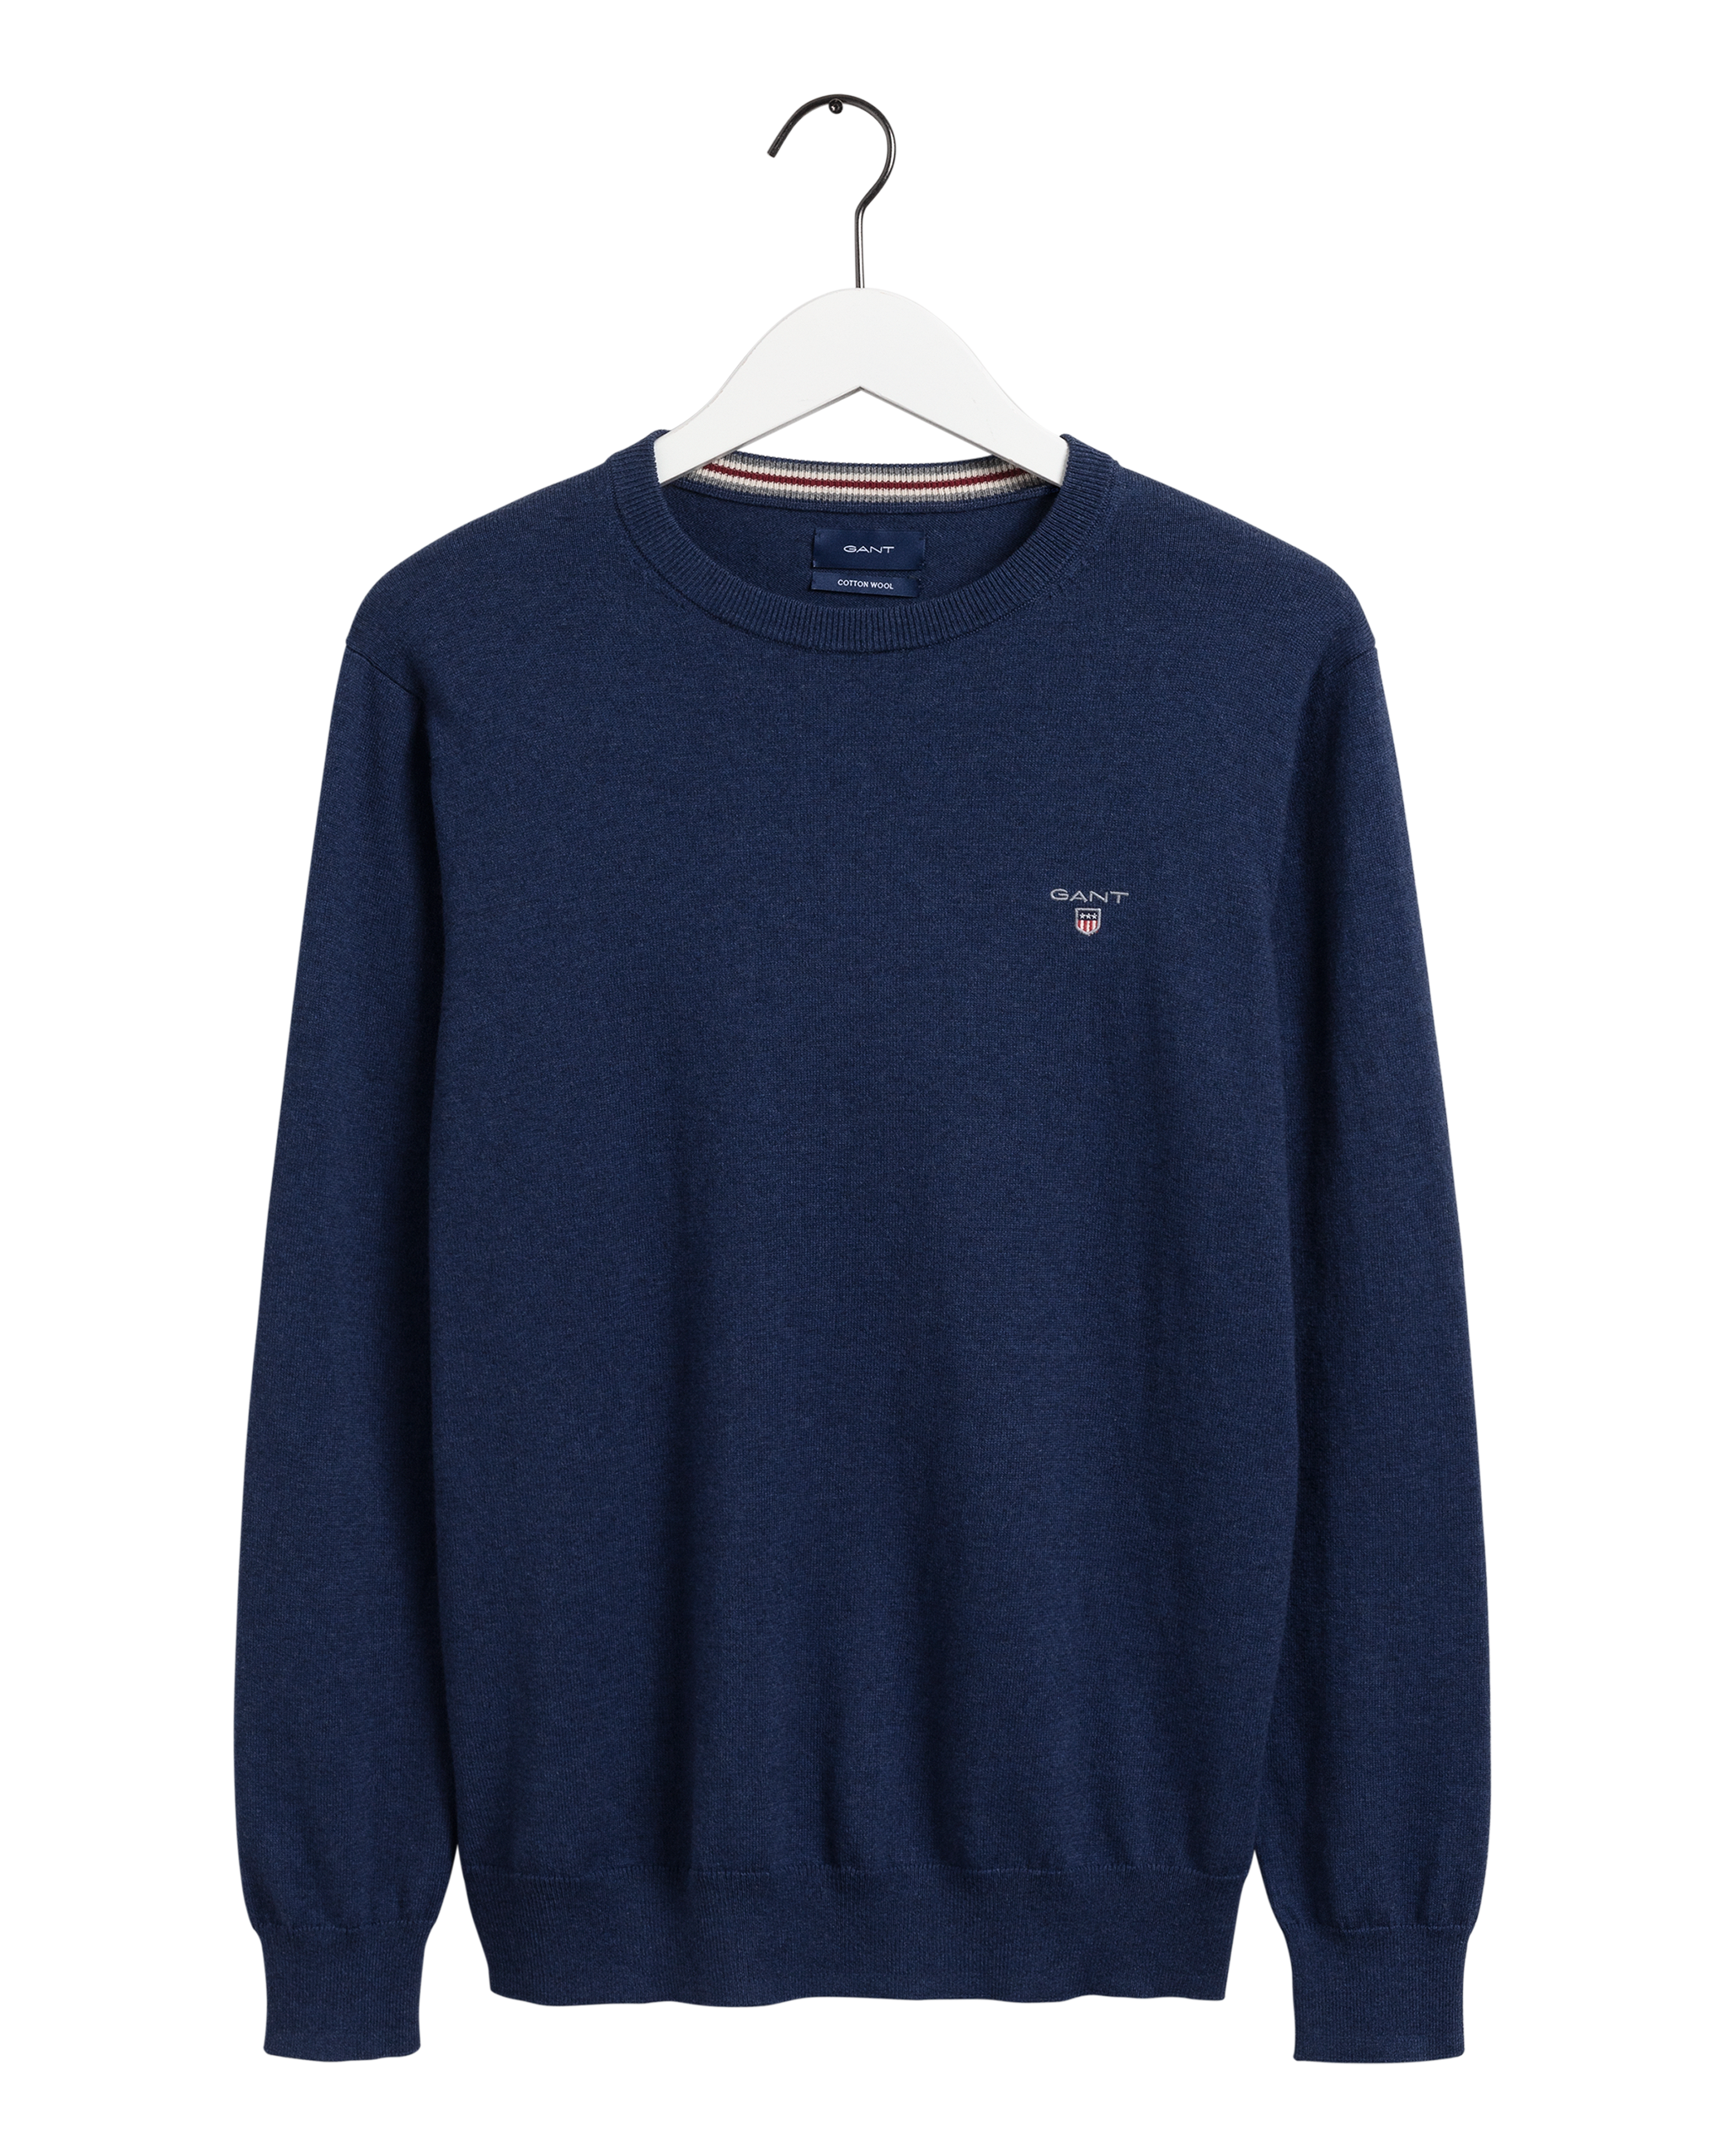  Cotton Crew Neck Sweater, Marine Melange, XL